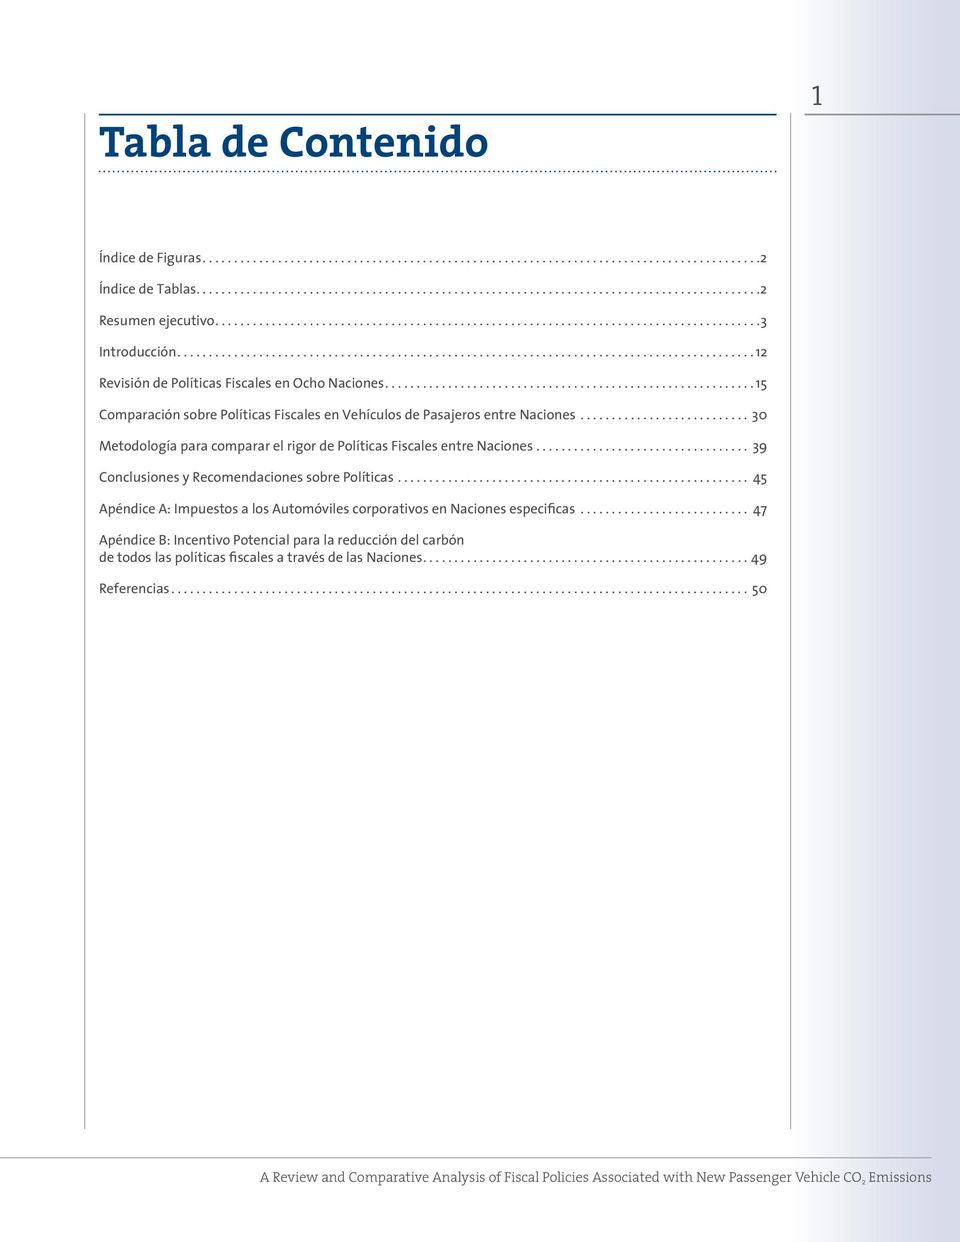 .. 39 Conclusiones y Recomendaciones sobre Políticas... 45 Apéndice A: Impuestos a los Automóviles corporativos en Naciones especificas.